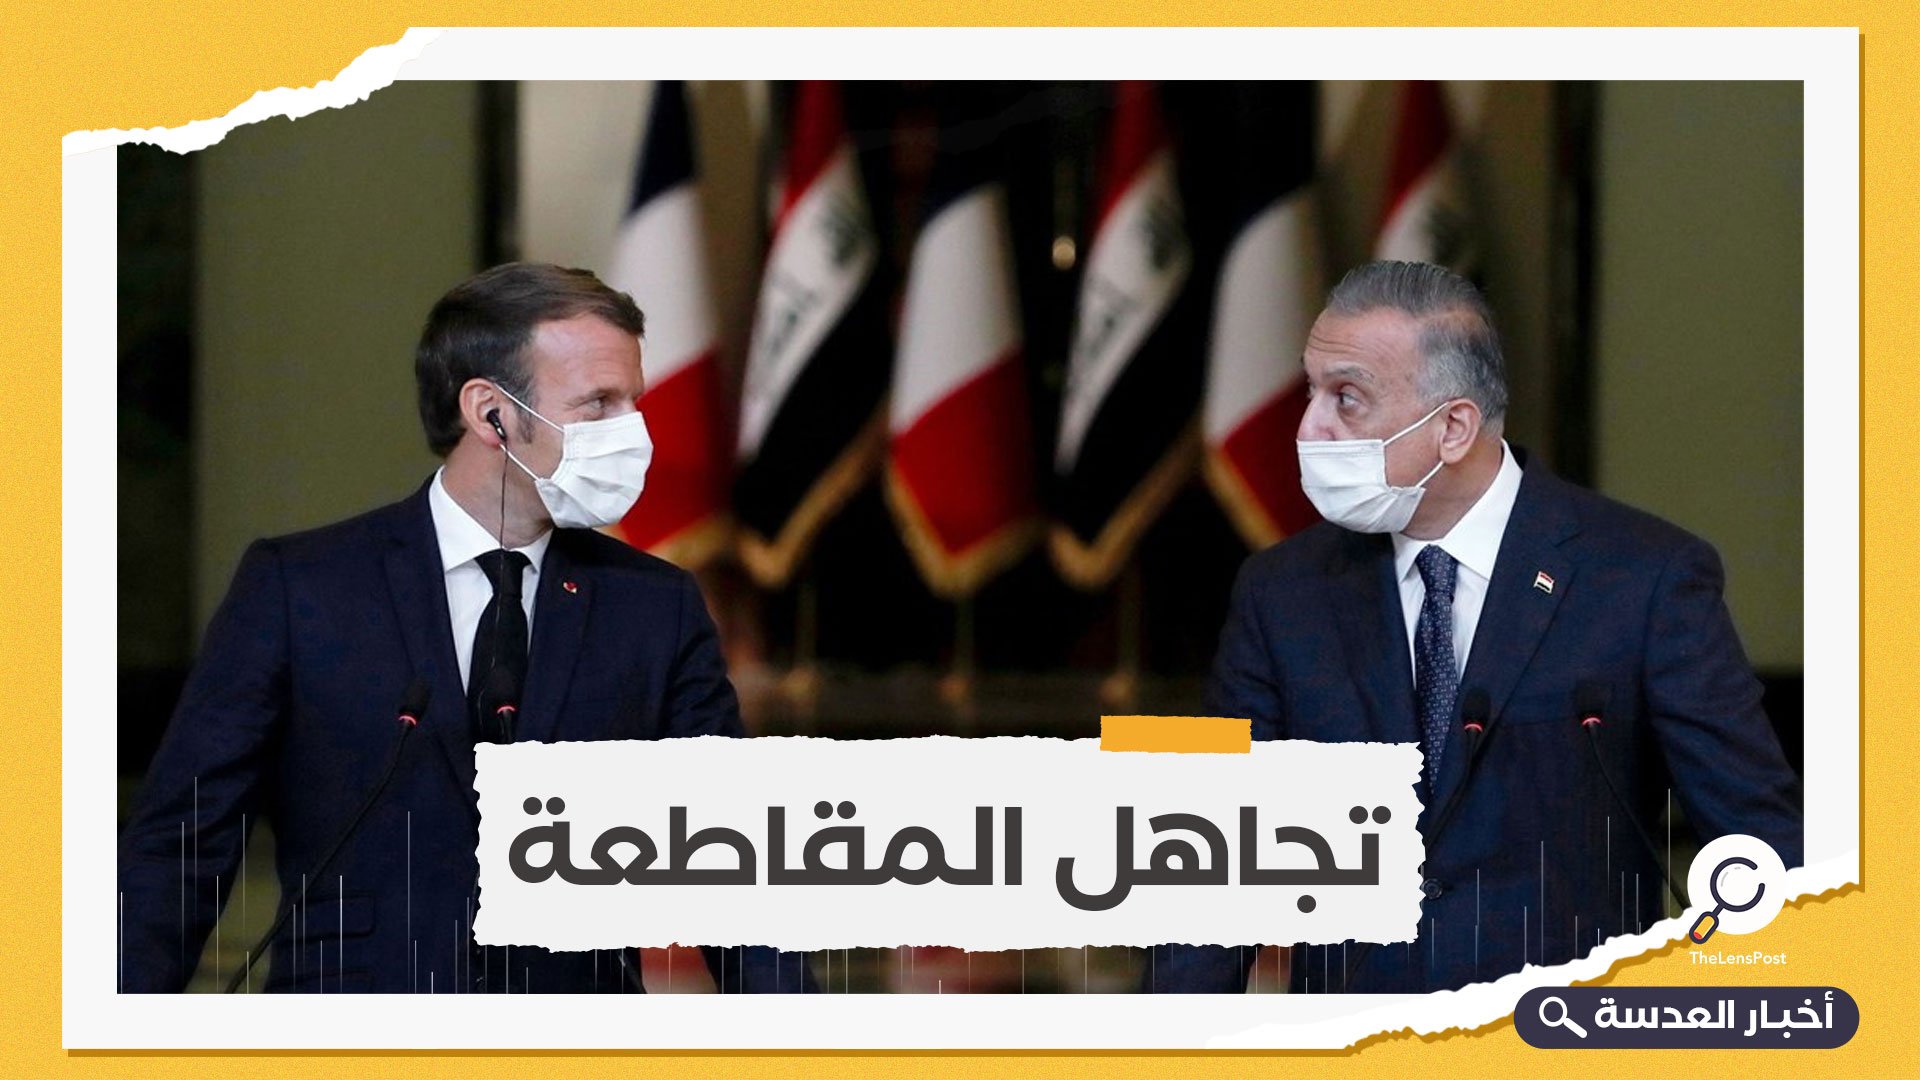 الحكومة العراقية تتجاهل المقاطعة الفرنسية و توقع مذكرة تفاهم مع شركة توتال الفرنسية 